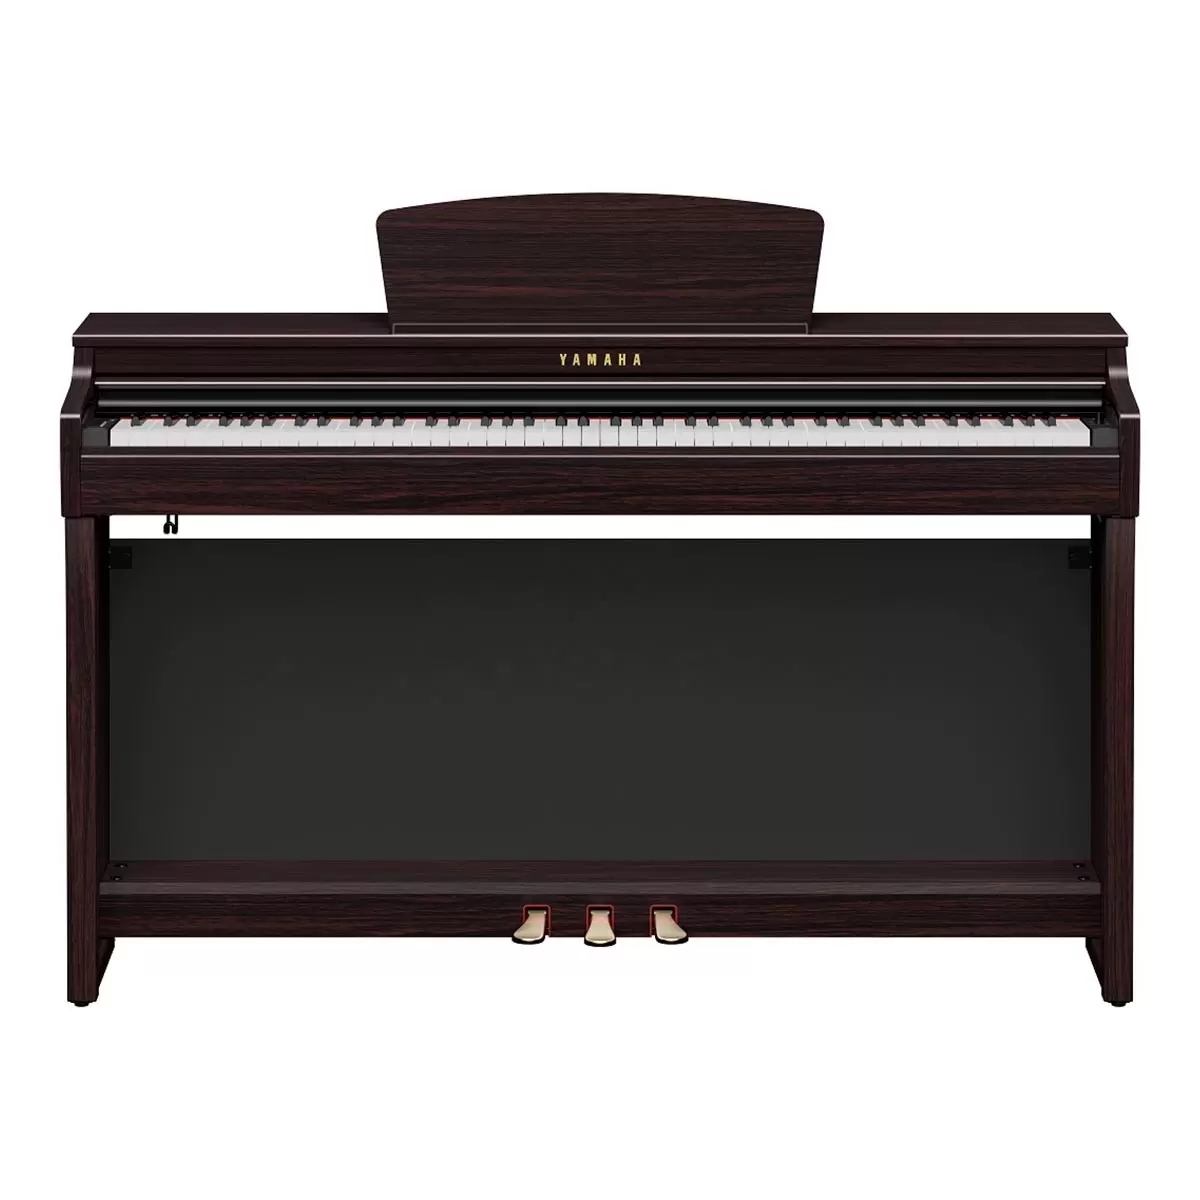 Yamaha 88鍵數位鋼琴 CLP725